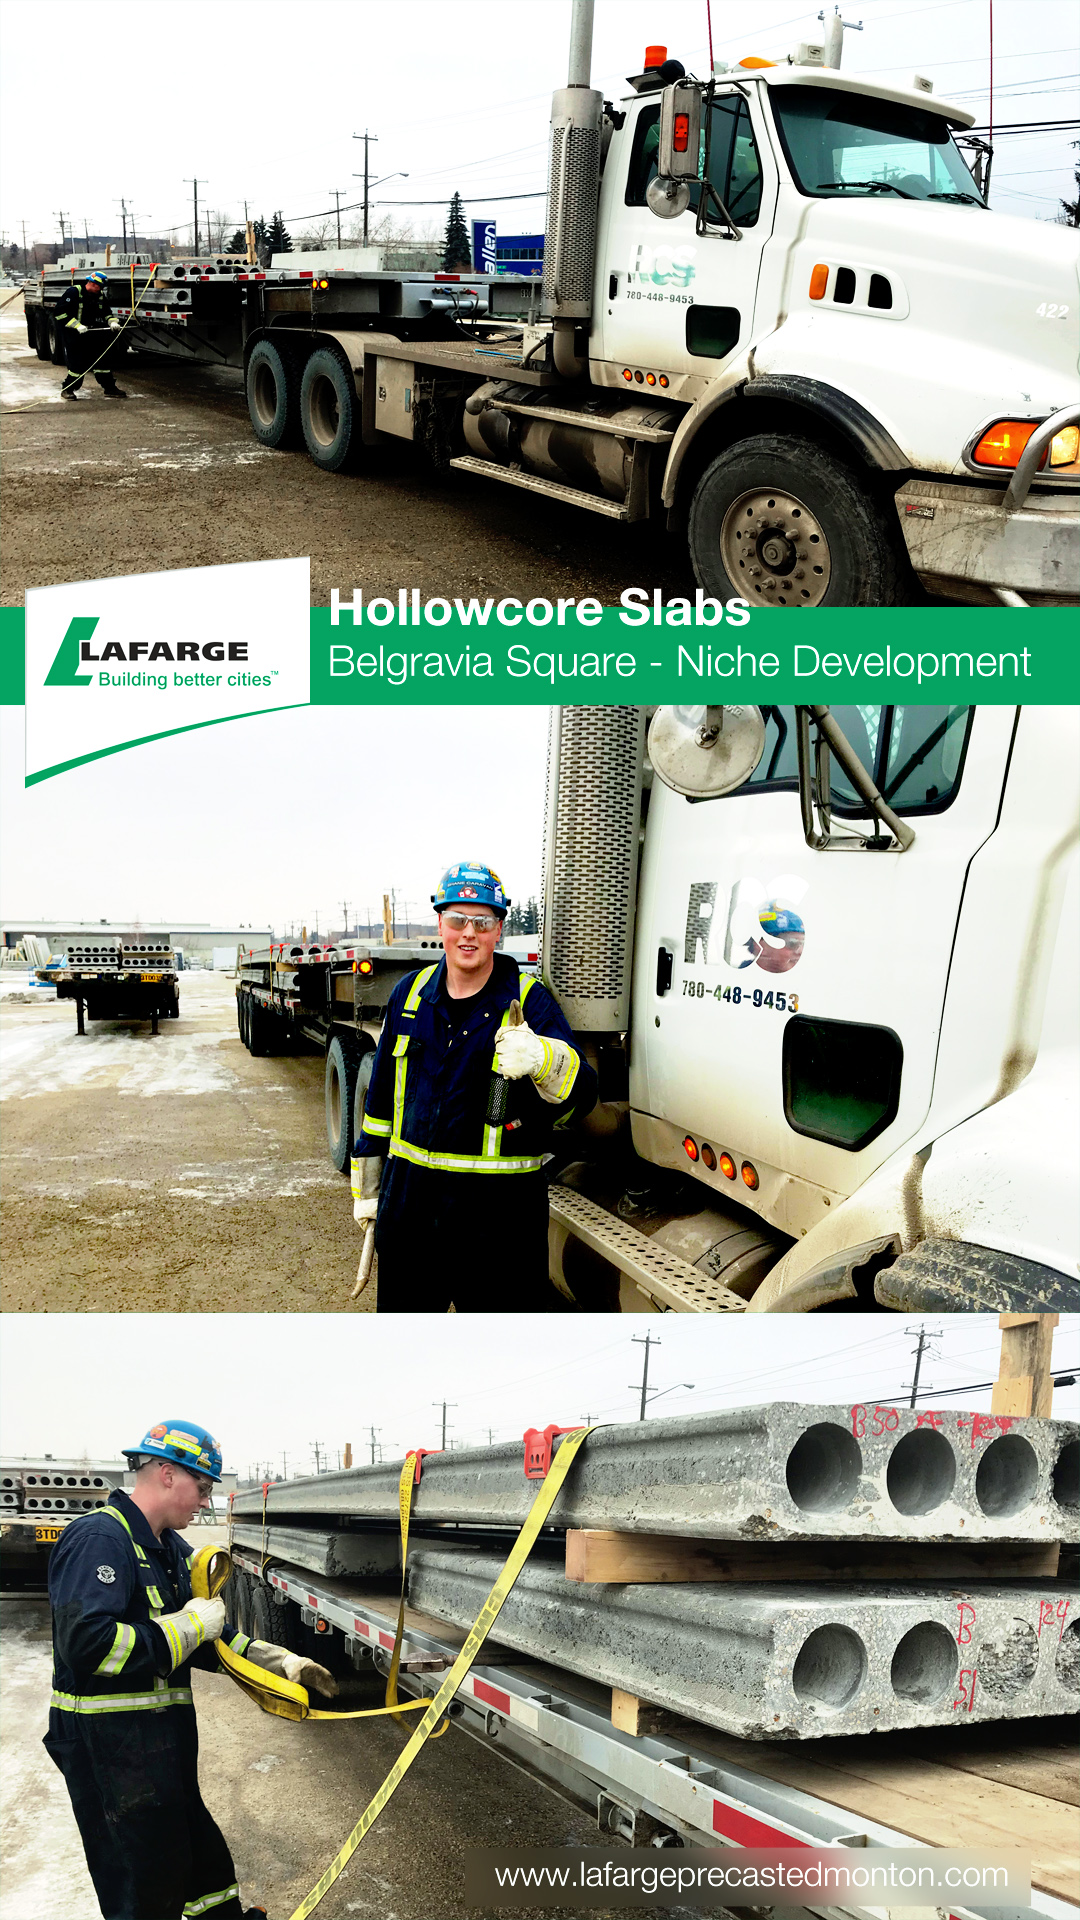 Lafarge Precast Edmonton belgravia square niche Roblin Crane Services Hollowcore Insulcore Q-deck prefab concrete cement